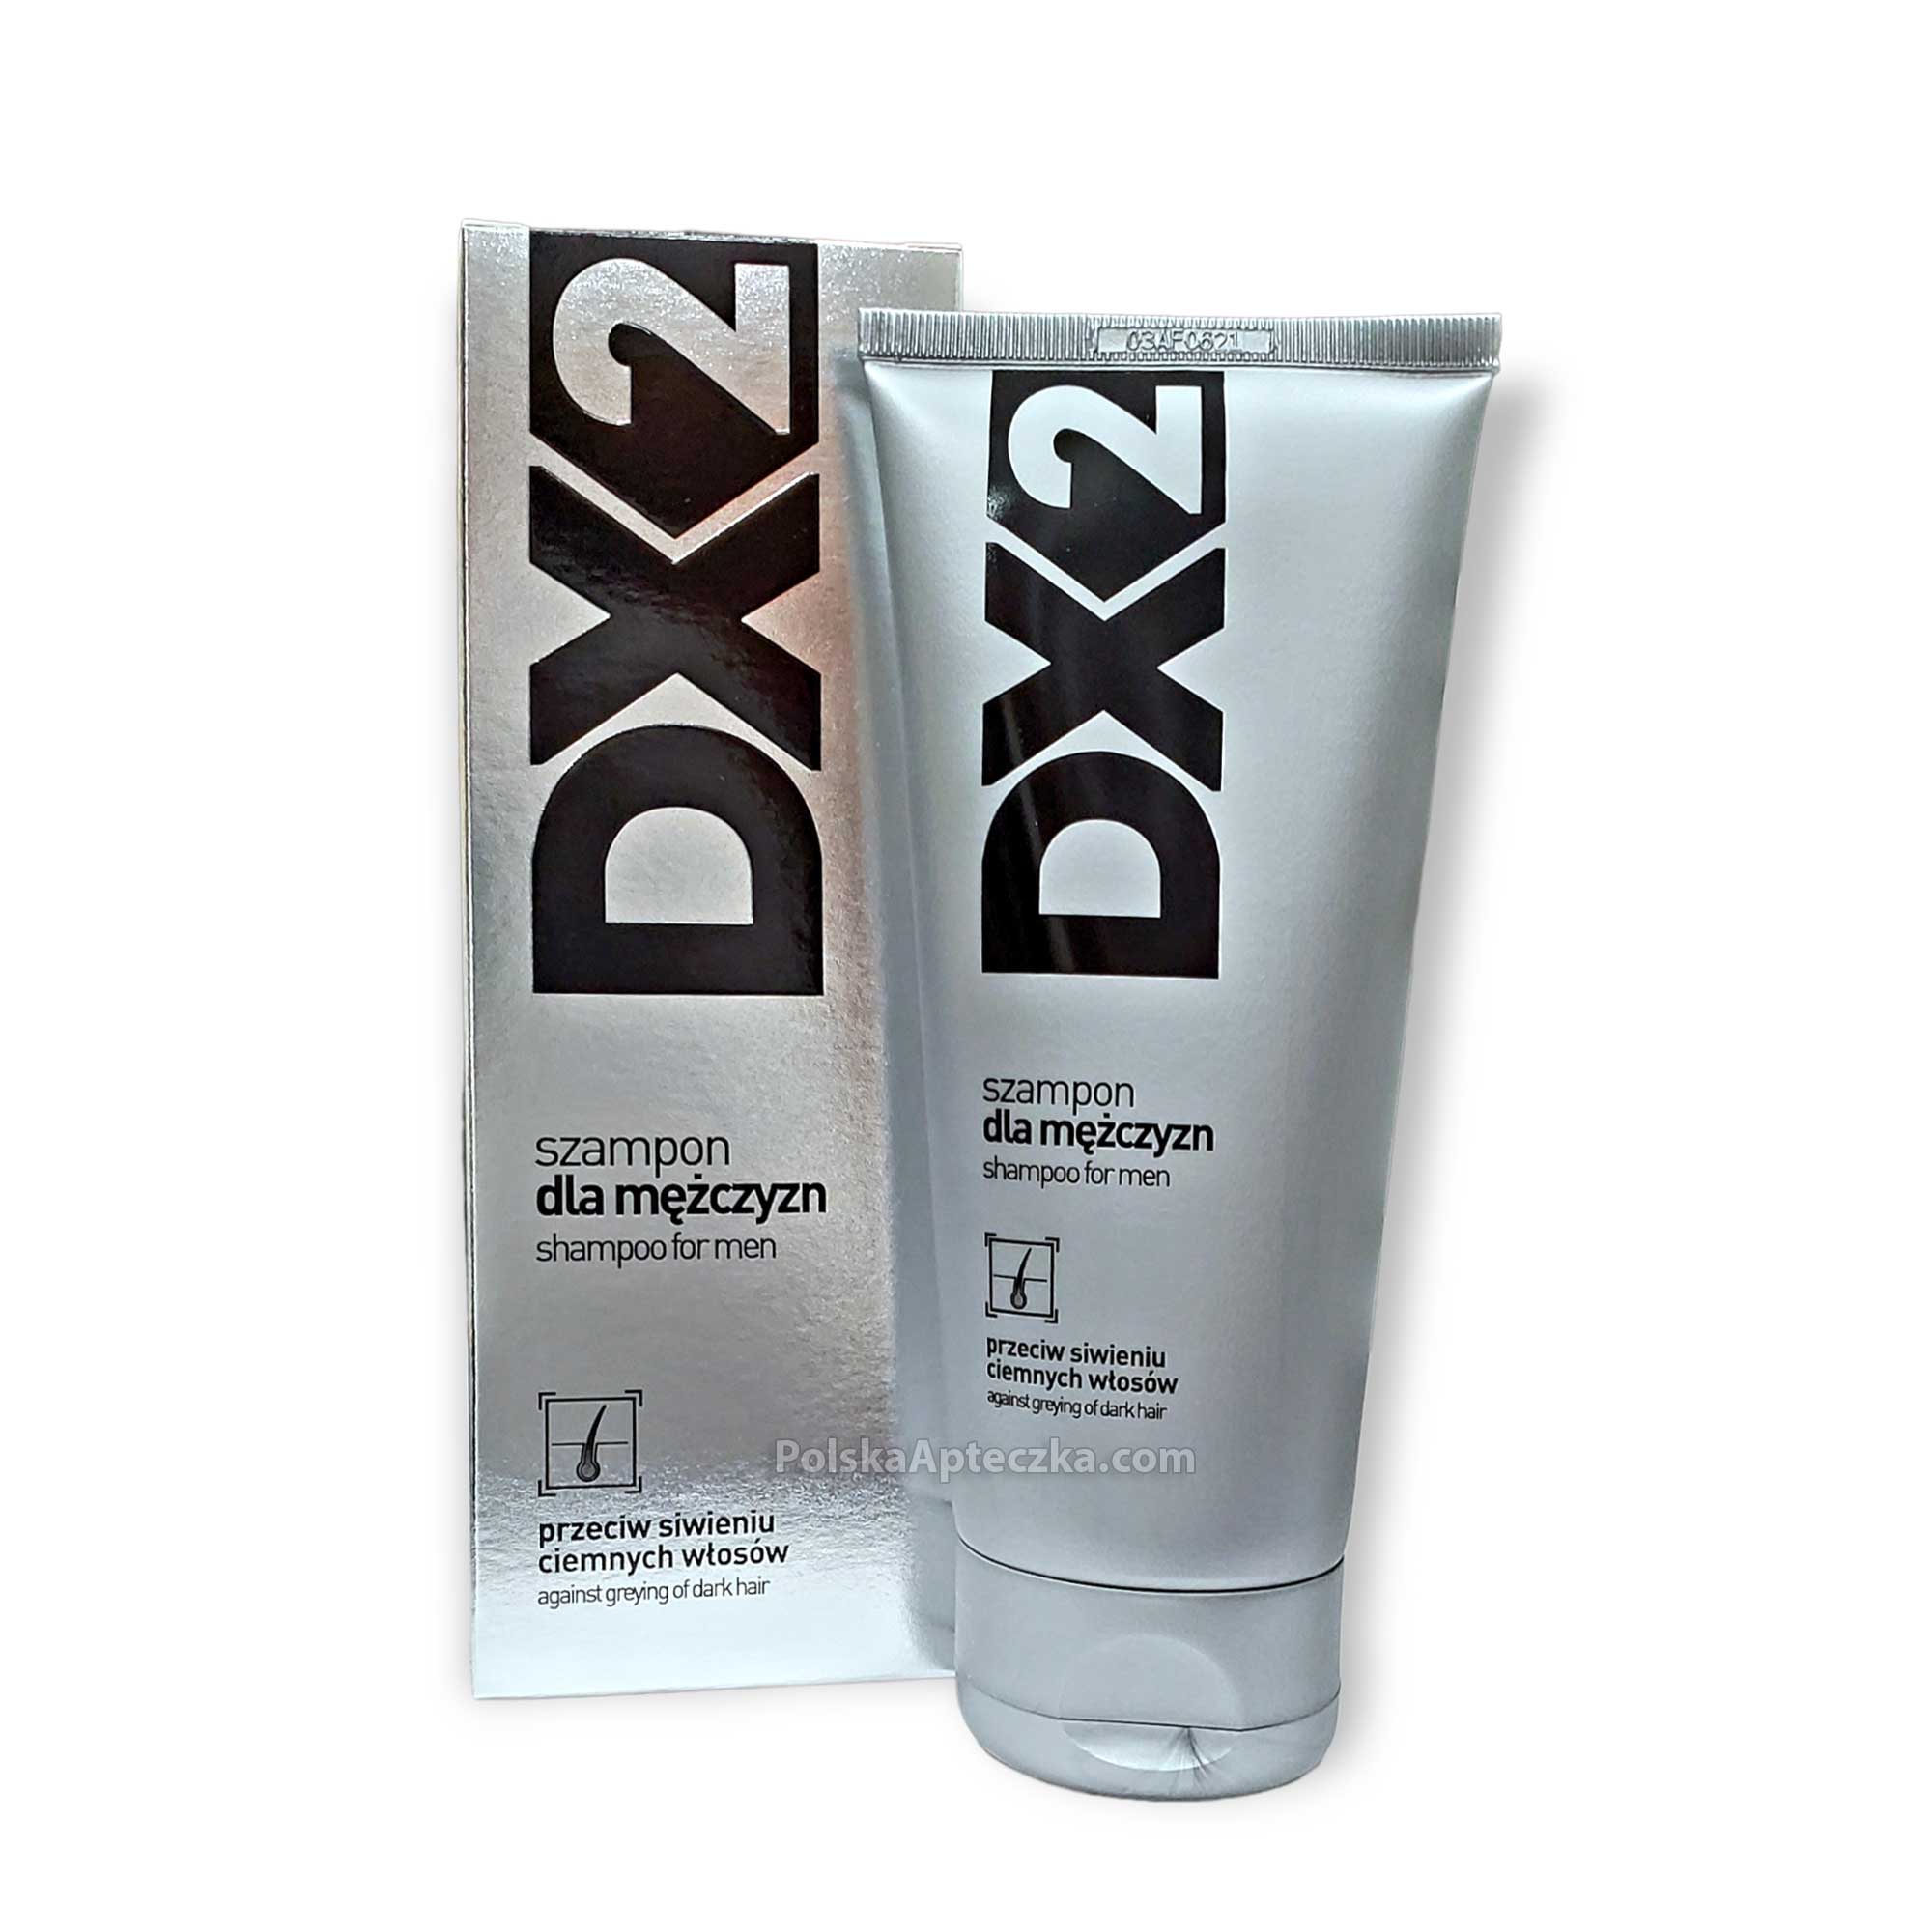 szampon dx2 stosowac po umysciu glowy